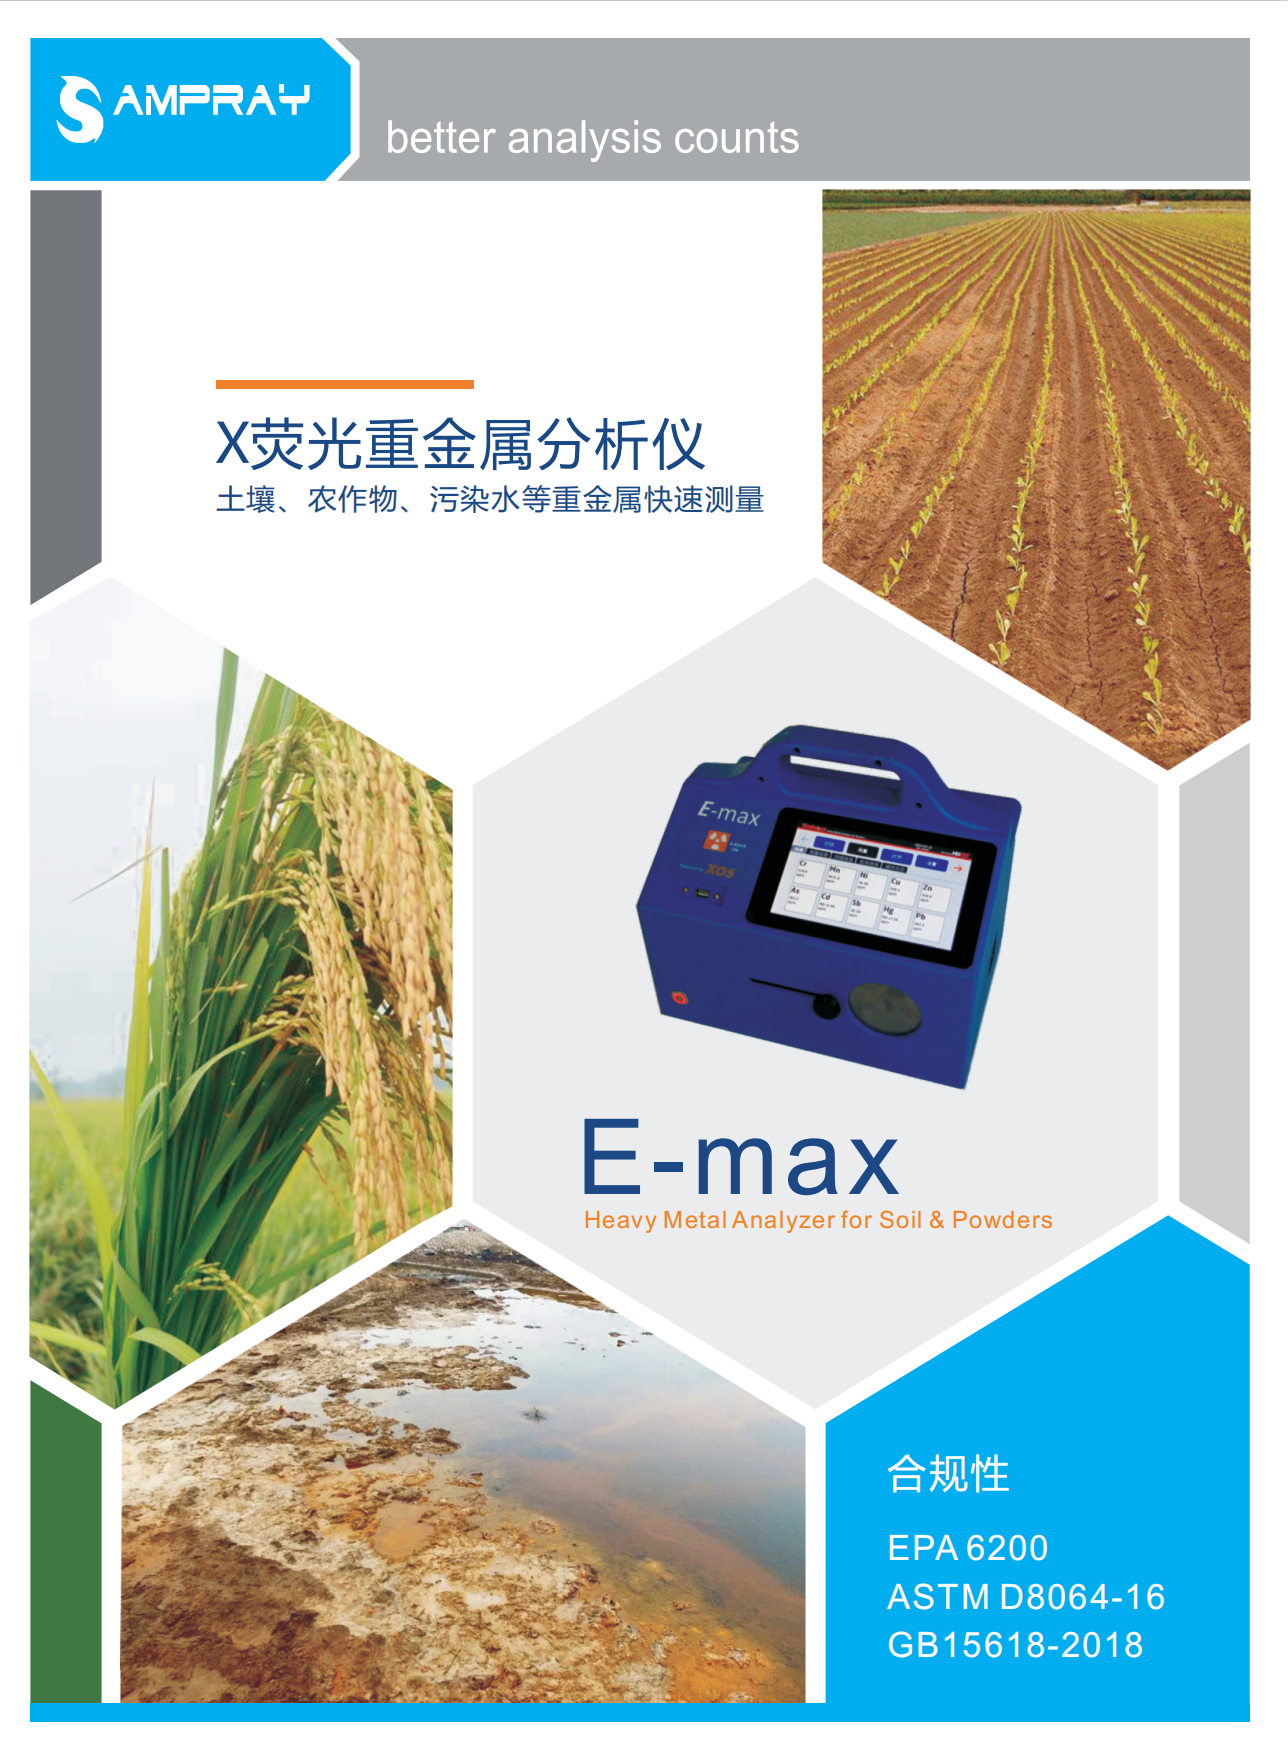 北京琰森科技--EMAX便携式X荧光元素分析仪 重金属分析仪